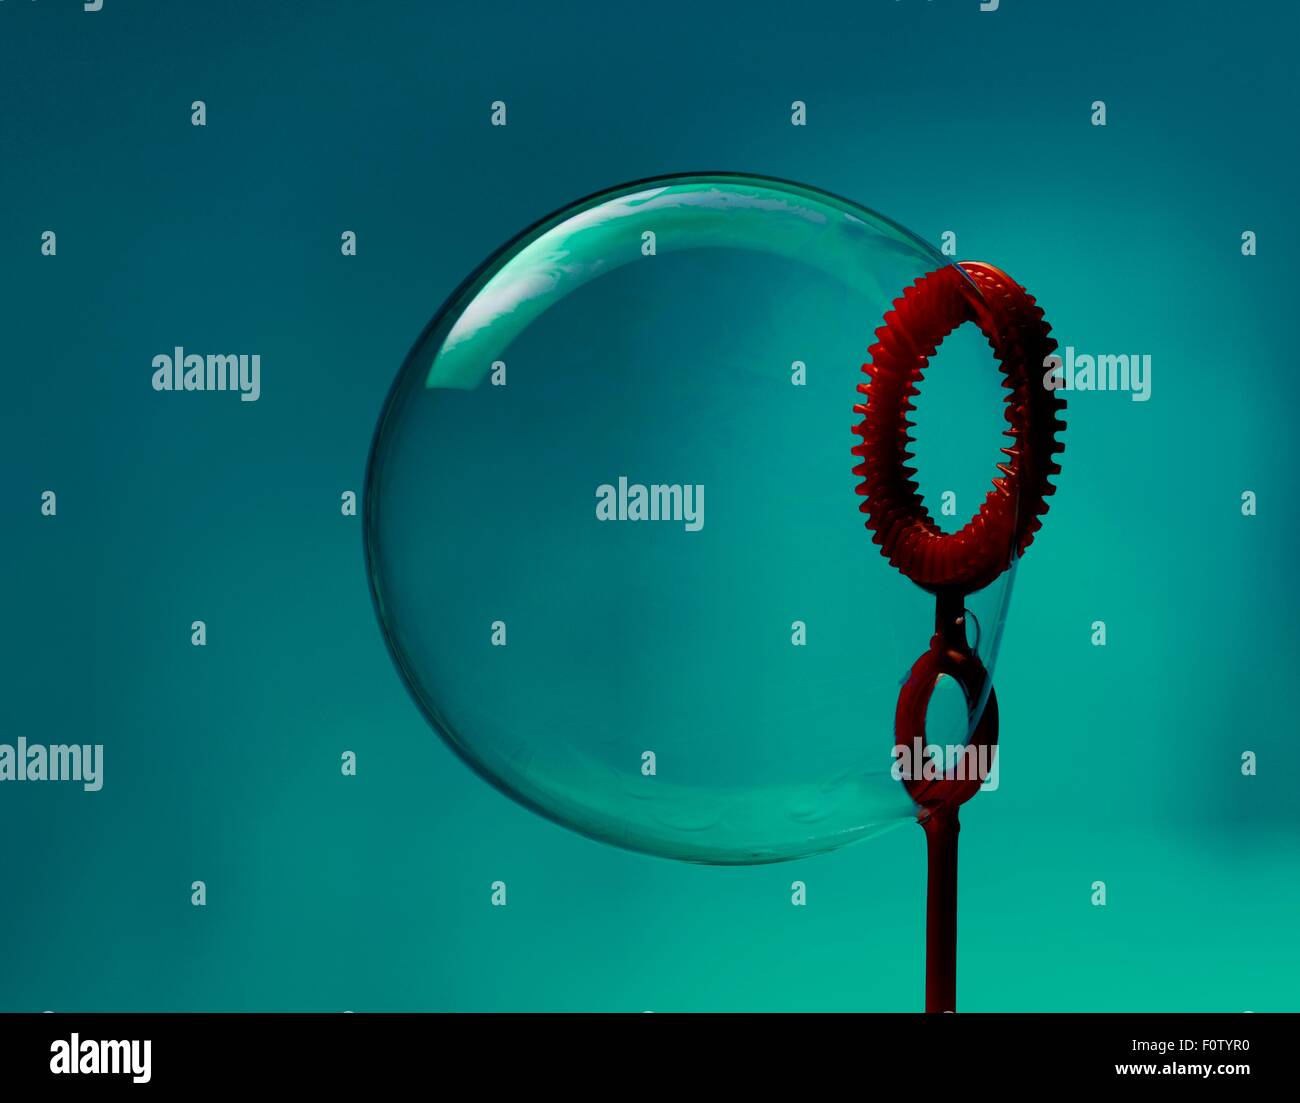 Stillleben mit Blase und rote Blase Zauberstab Stockfotografie - Alamy